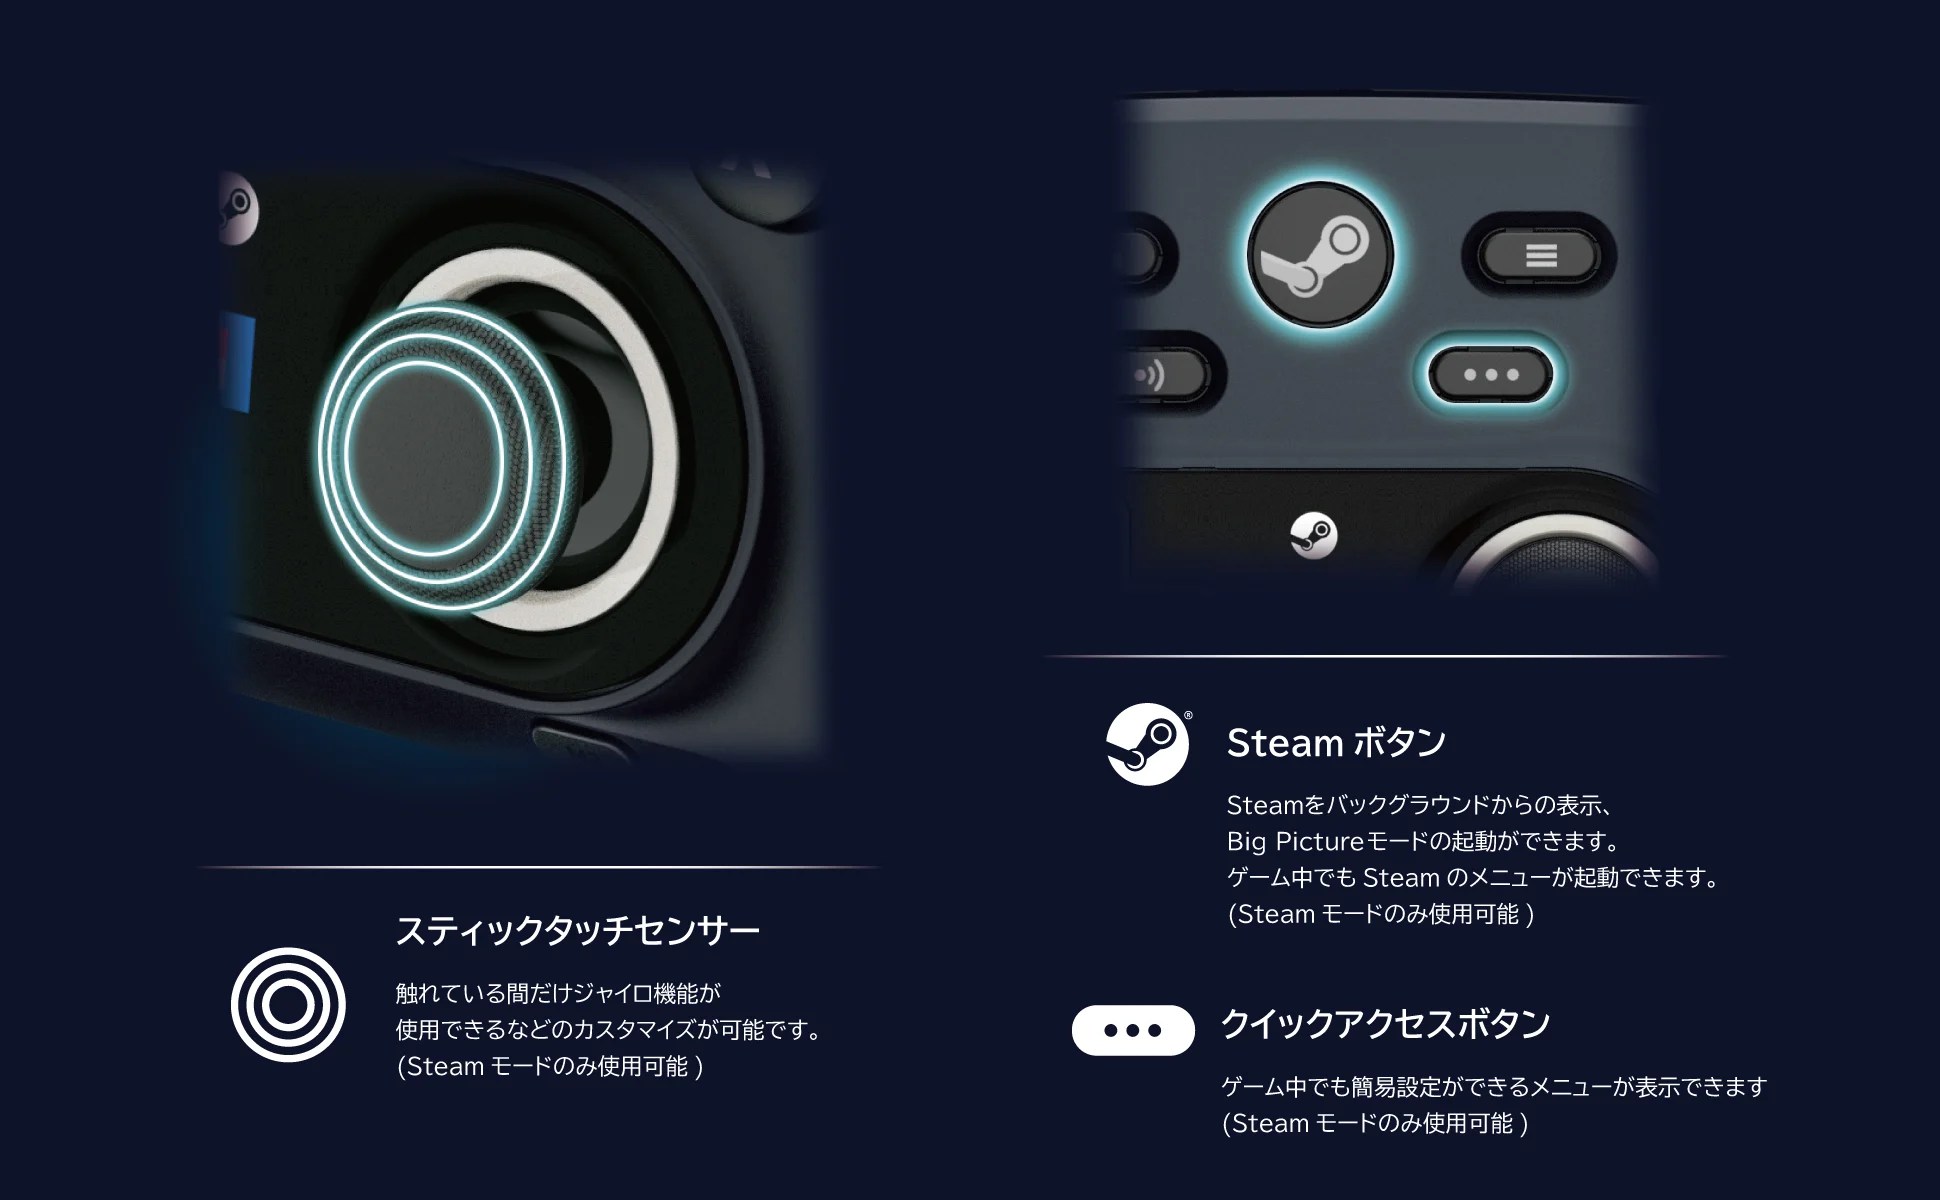 Description des fonctionnalités du Wireless Horipad for Steam